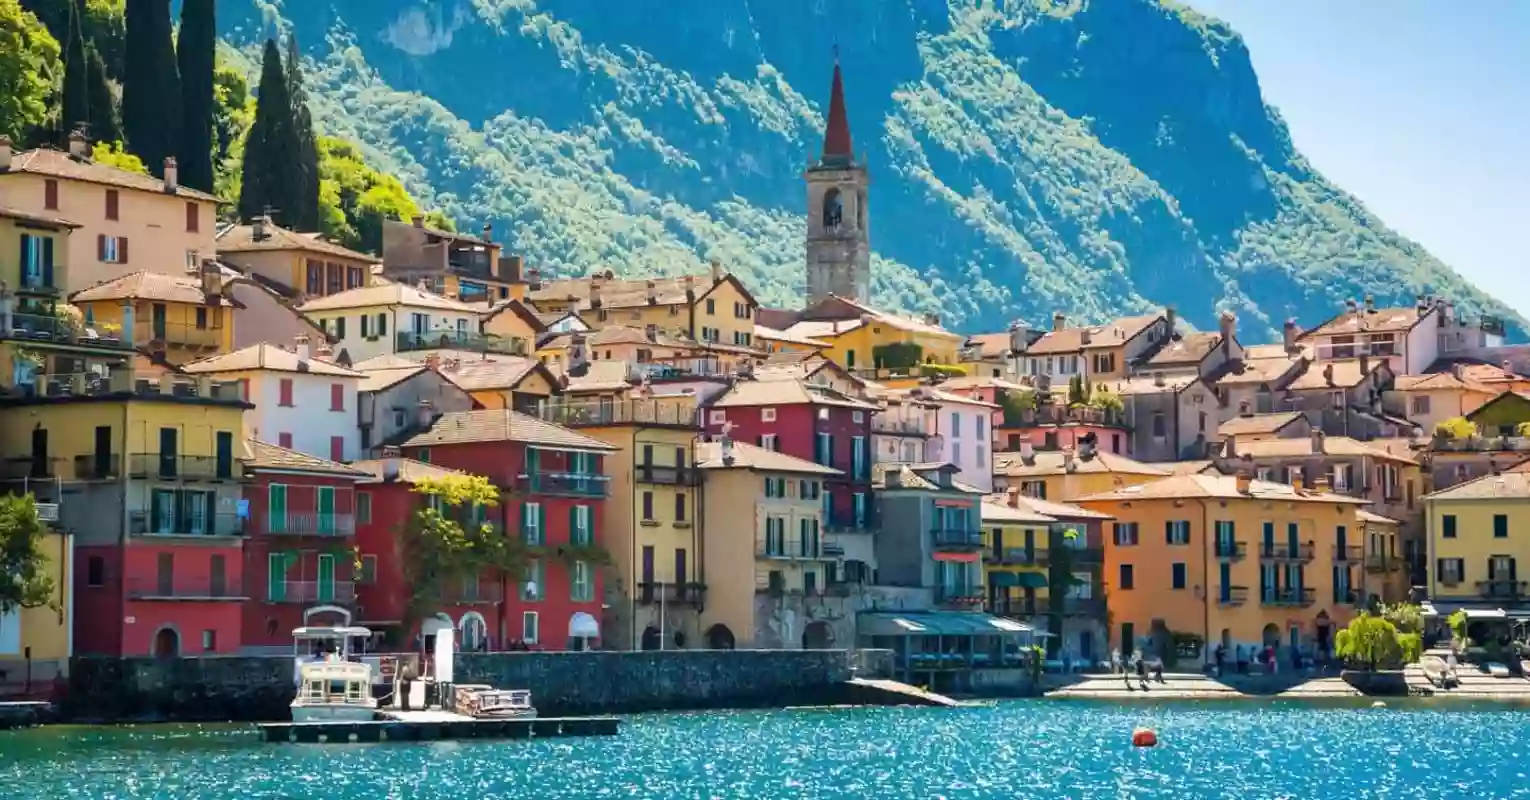 Пошаговое руководство по получению визы для поездки в Италию